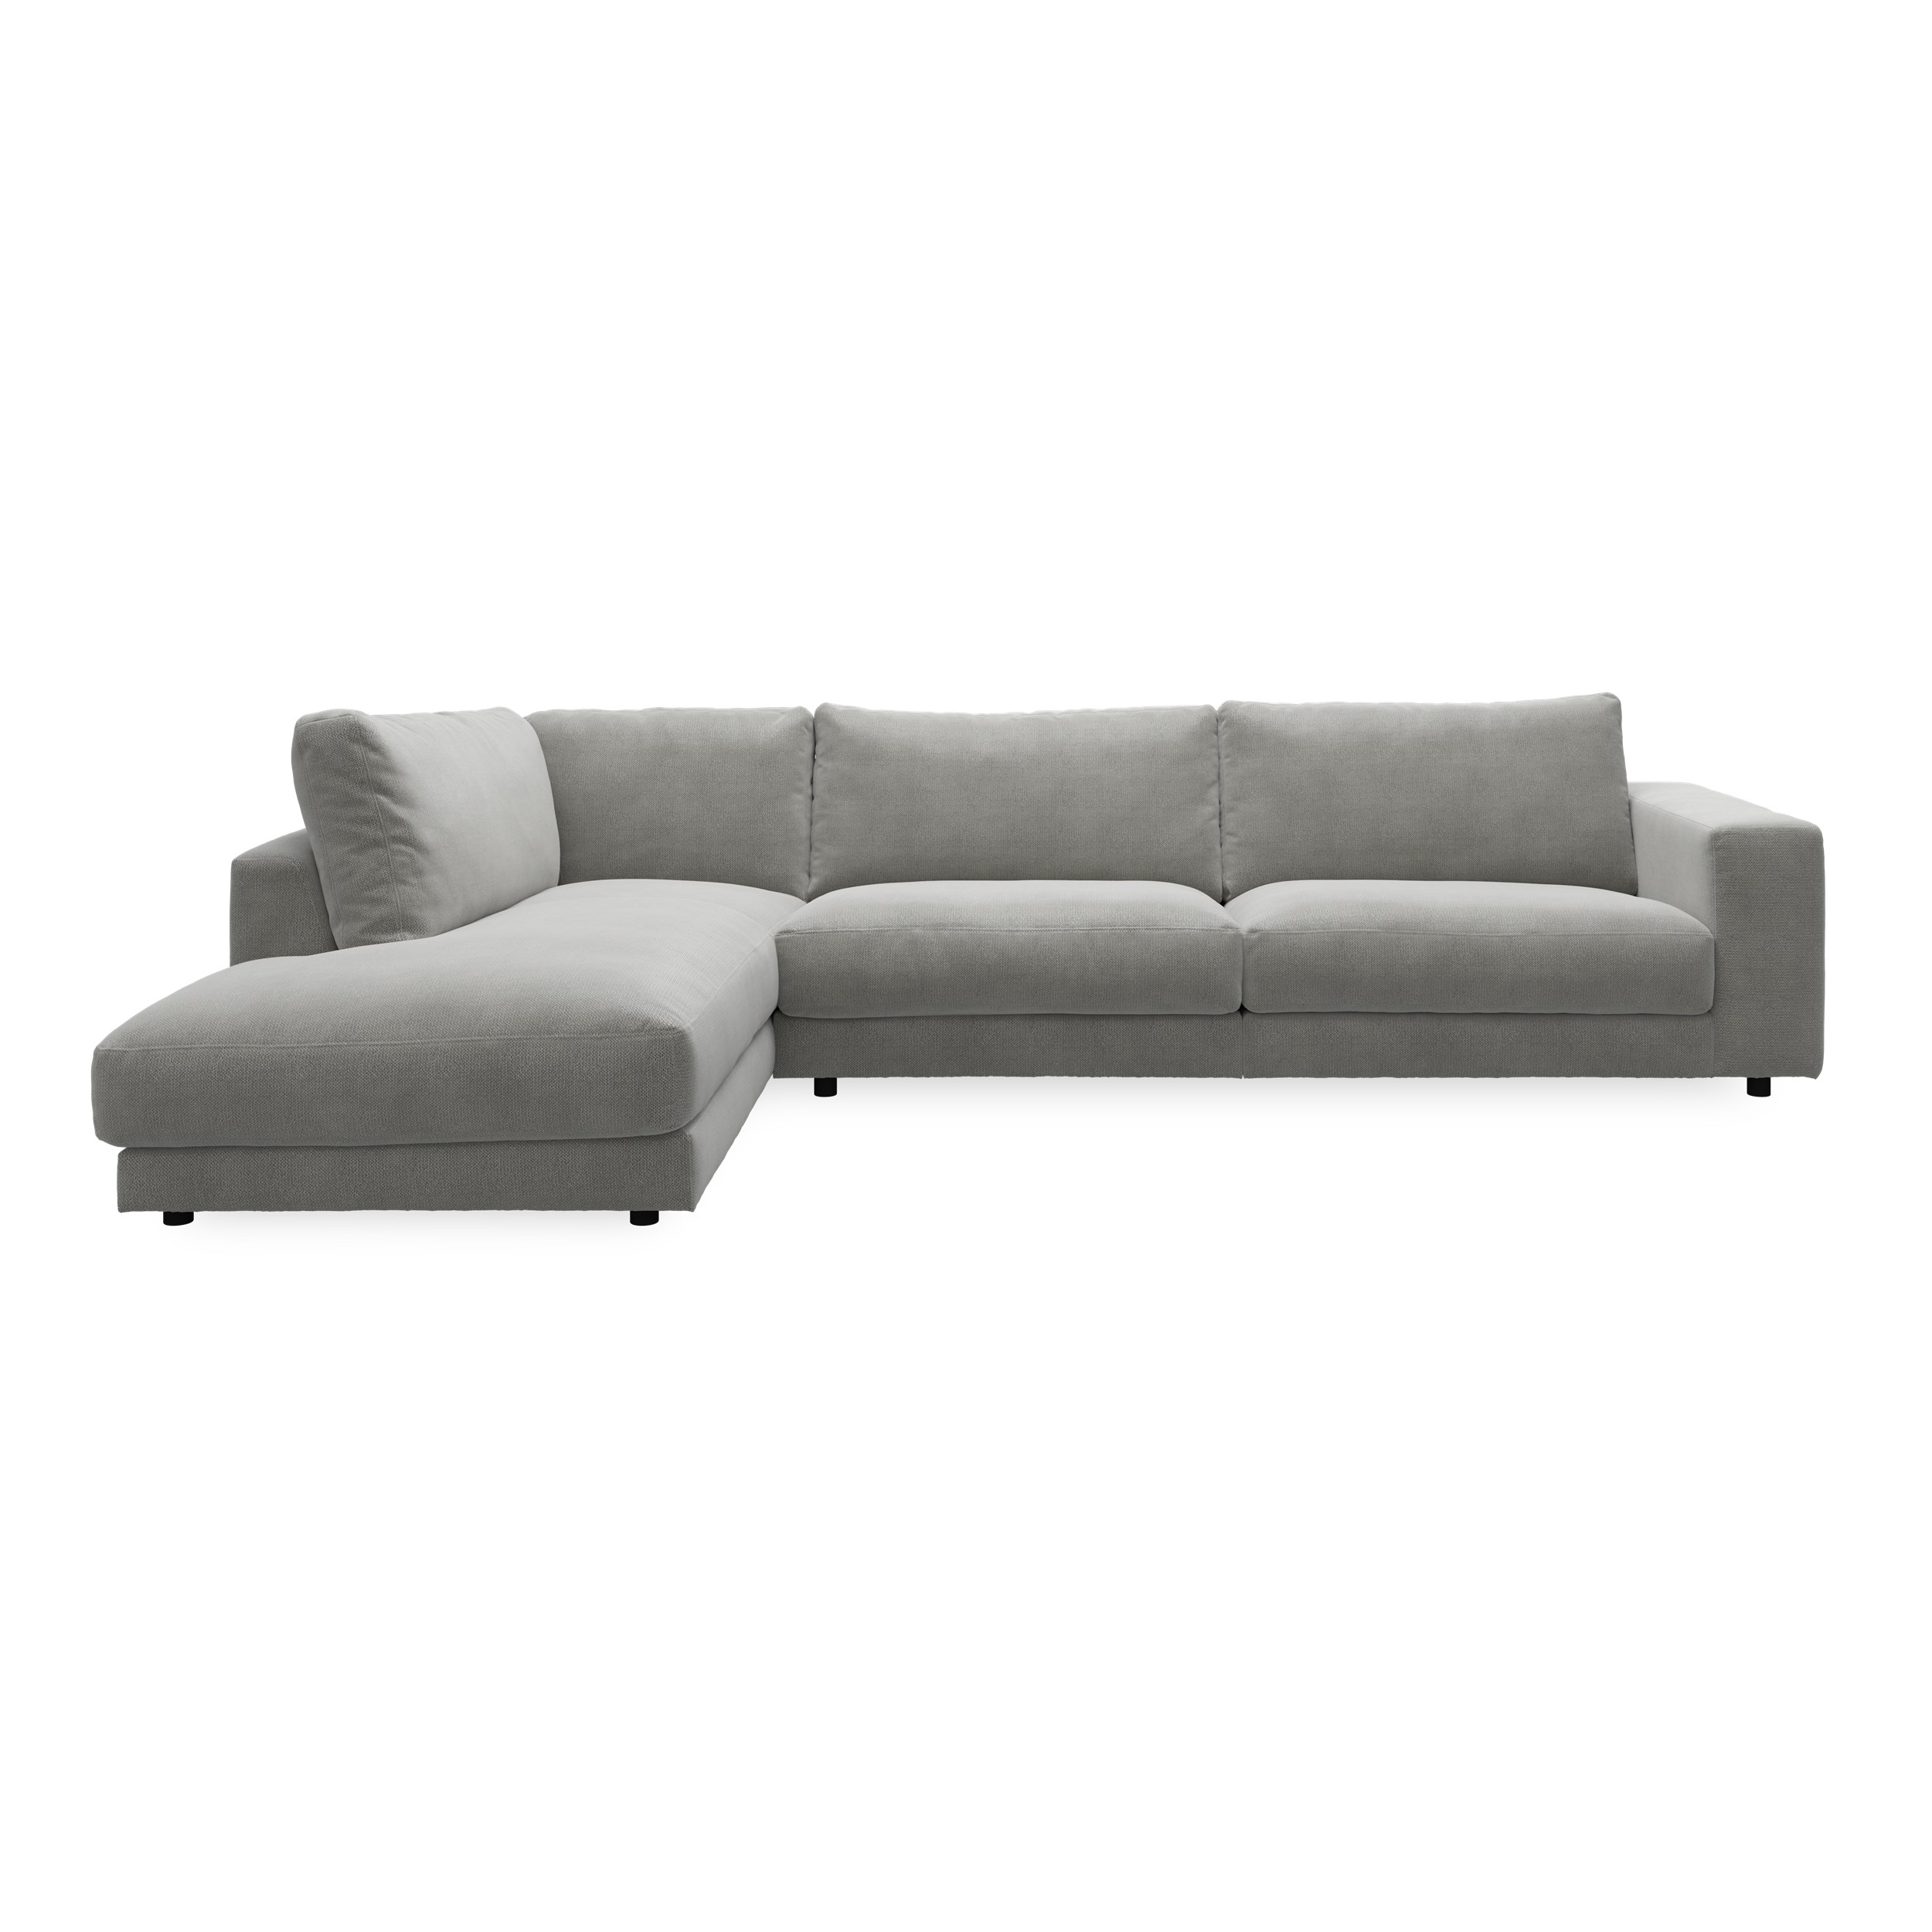 Bennent vänstervänd soffa med divan - Picasso Anthrazit klädsel, ben i svart plast och S:skum/fib/din/sili R:Dun/skum